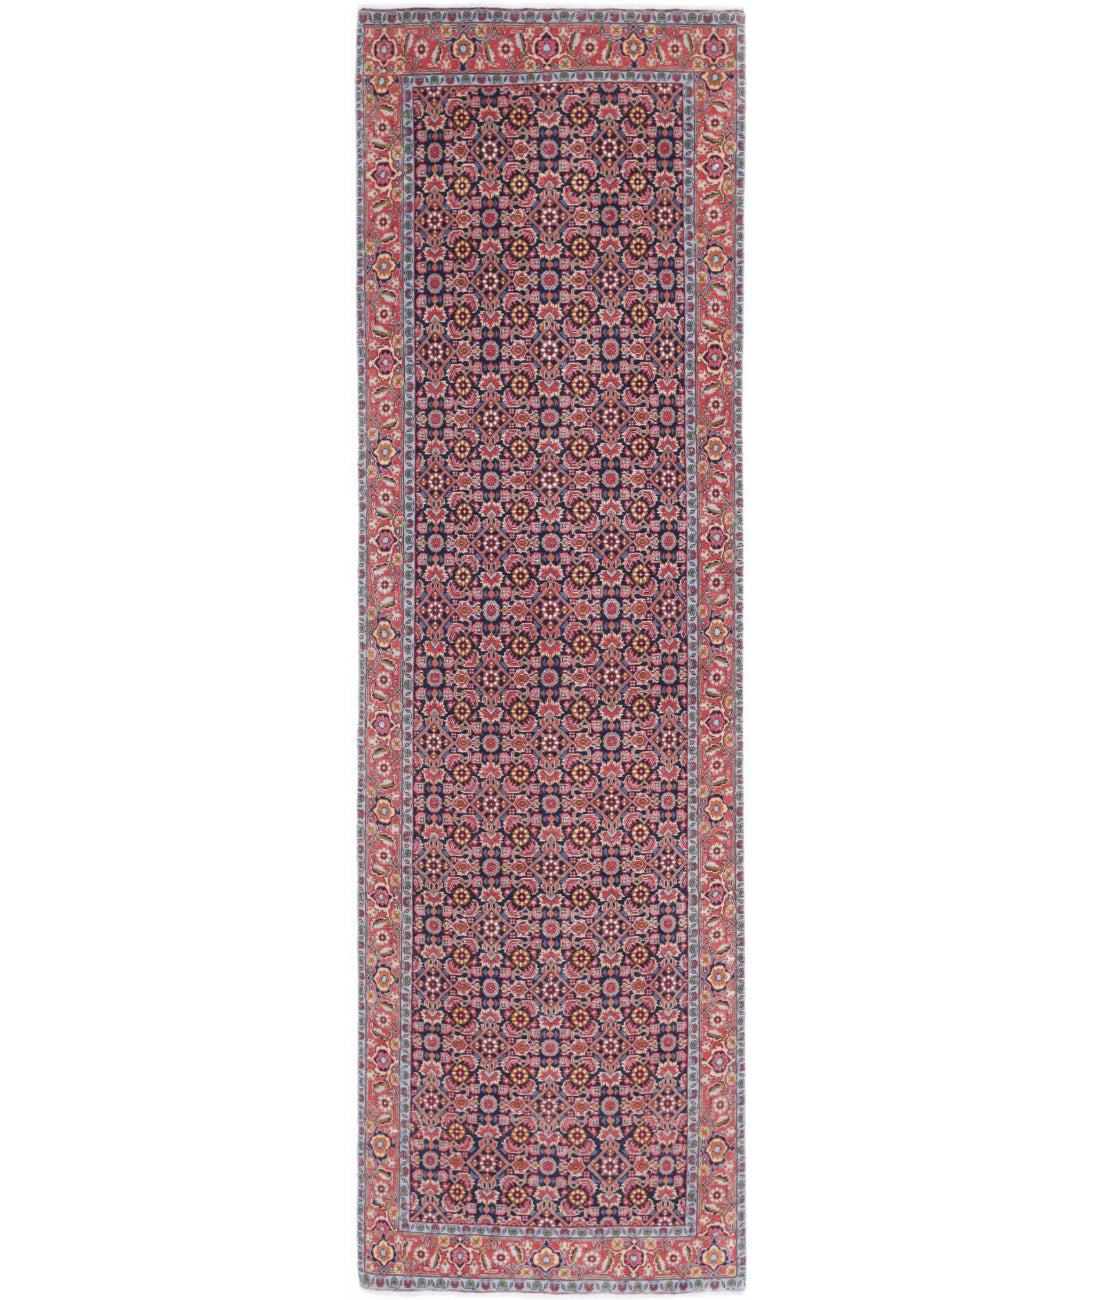 Hand Knotted Persian Bijar Wool Rug - 2&#39;9&#39;&#39; x 9&#39;7&#39;&#39; 2&#39;9&#39;&#39; x 9&#39;7&#39;&#39; (83 X 288) / Blue / Red